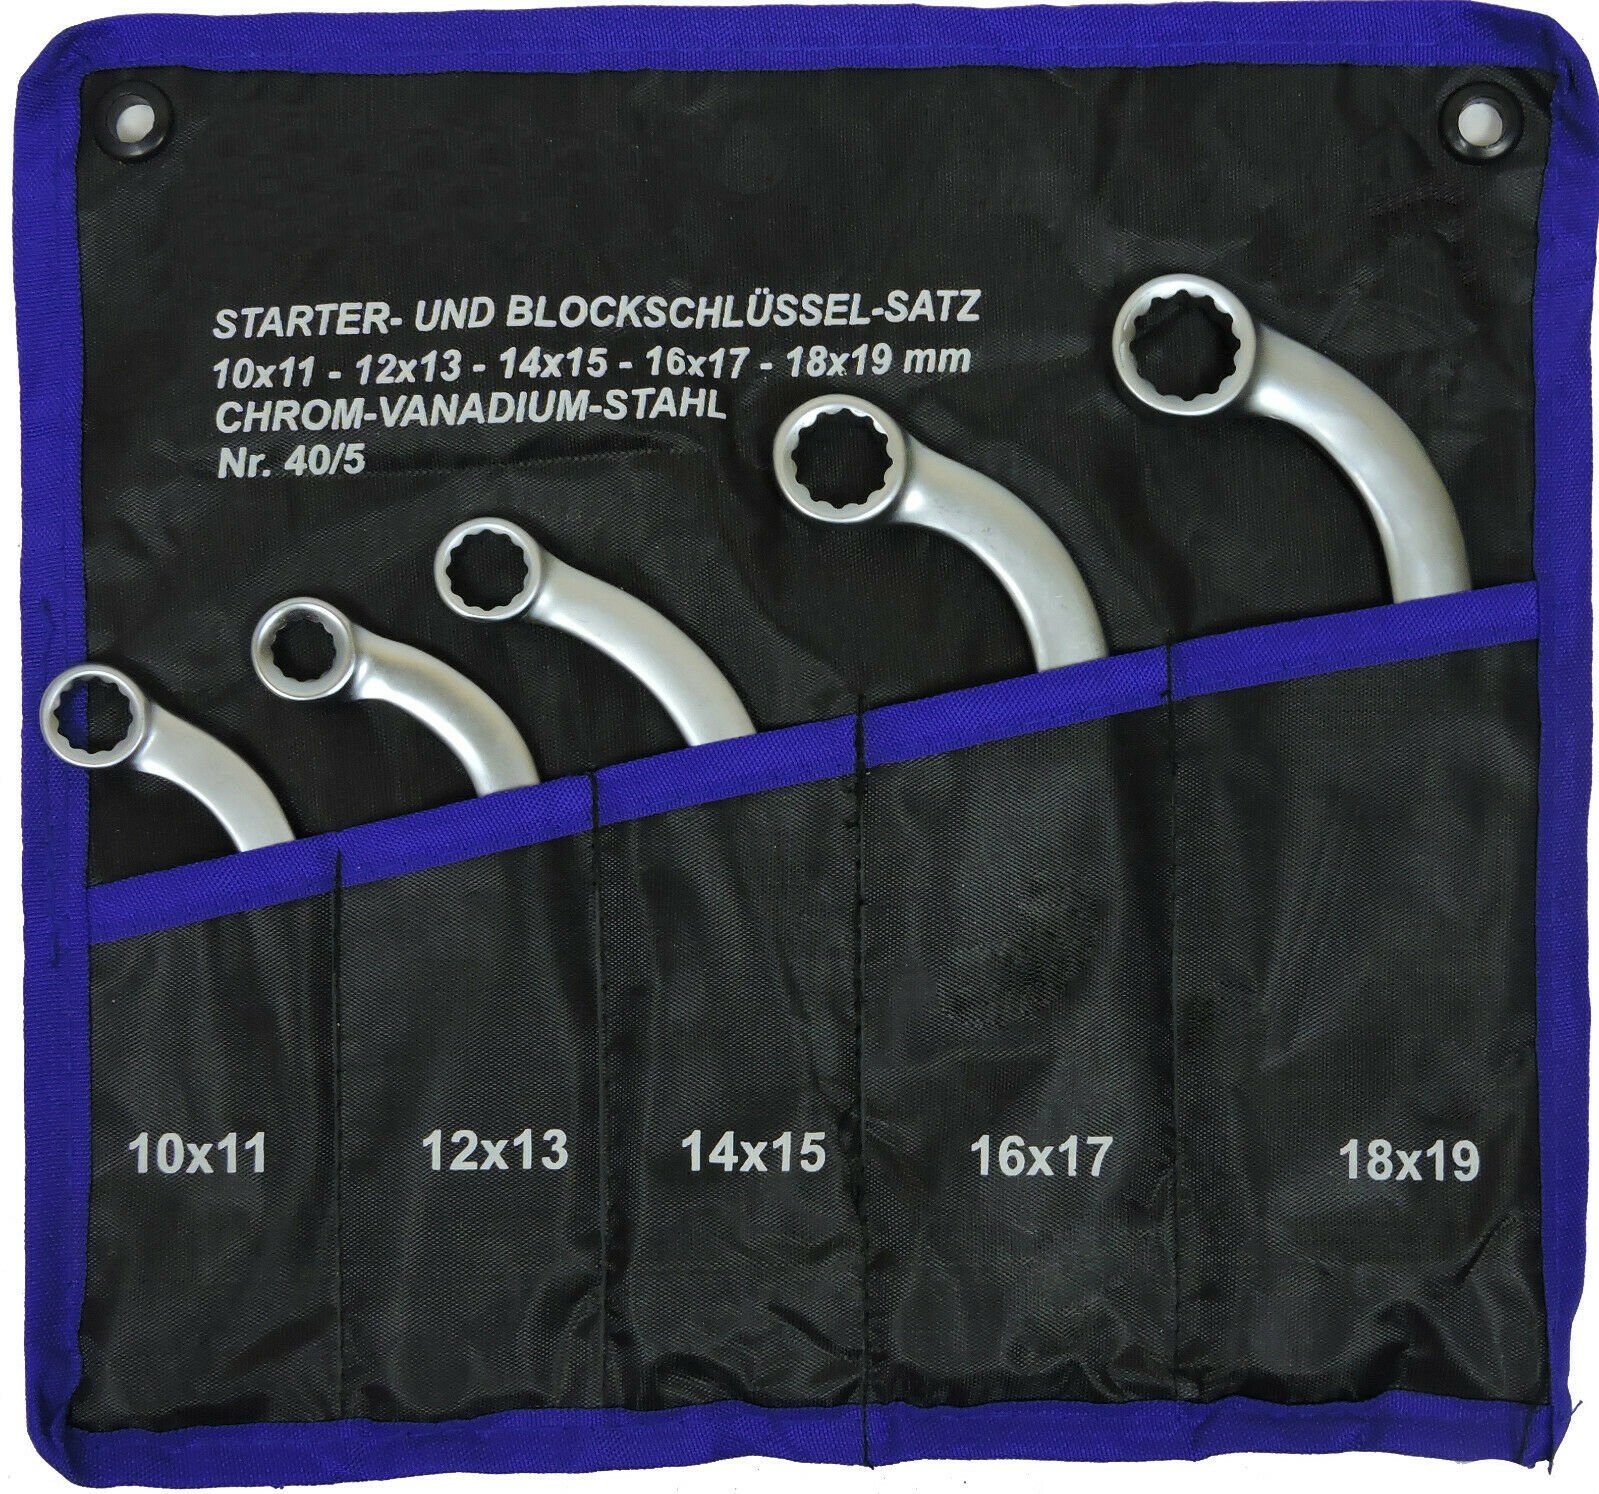 FAMEX Ringschlüssel 10366 Starterschlüssel Satz Starter und Blockschlüssel - Schraubenschlüssel Set (Schraubenschlüssel, 5 St), Sehr hohe Qualität - erlaubt hohe Standzeiten